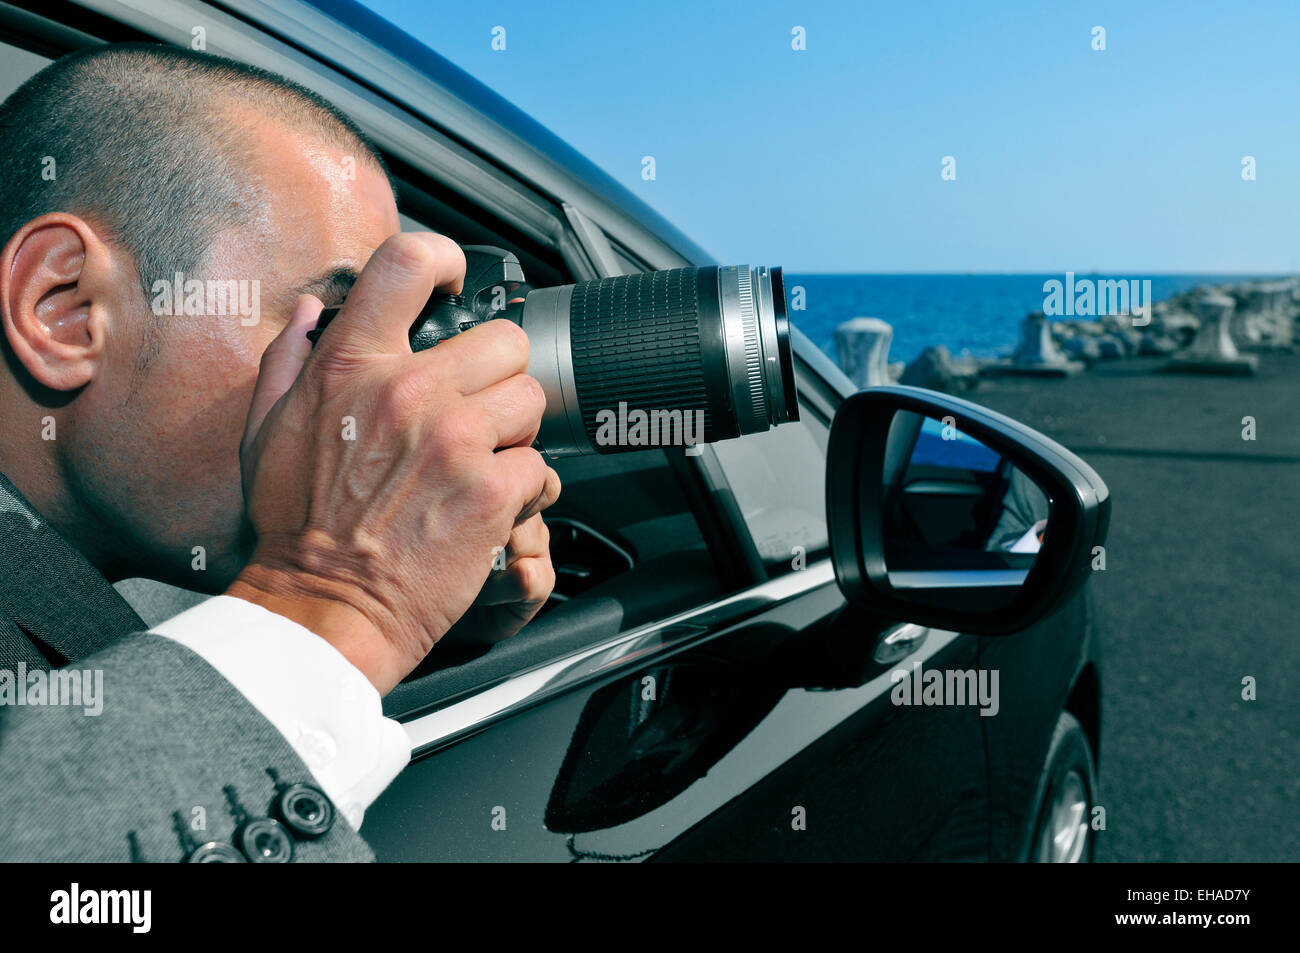 Un detective o un paparazzi tomando fotos desde dentro de un coche Foto de stock